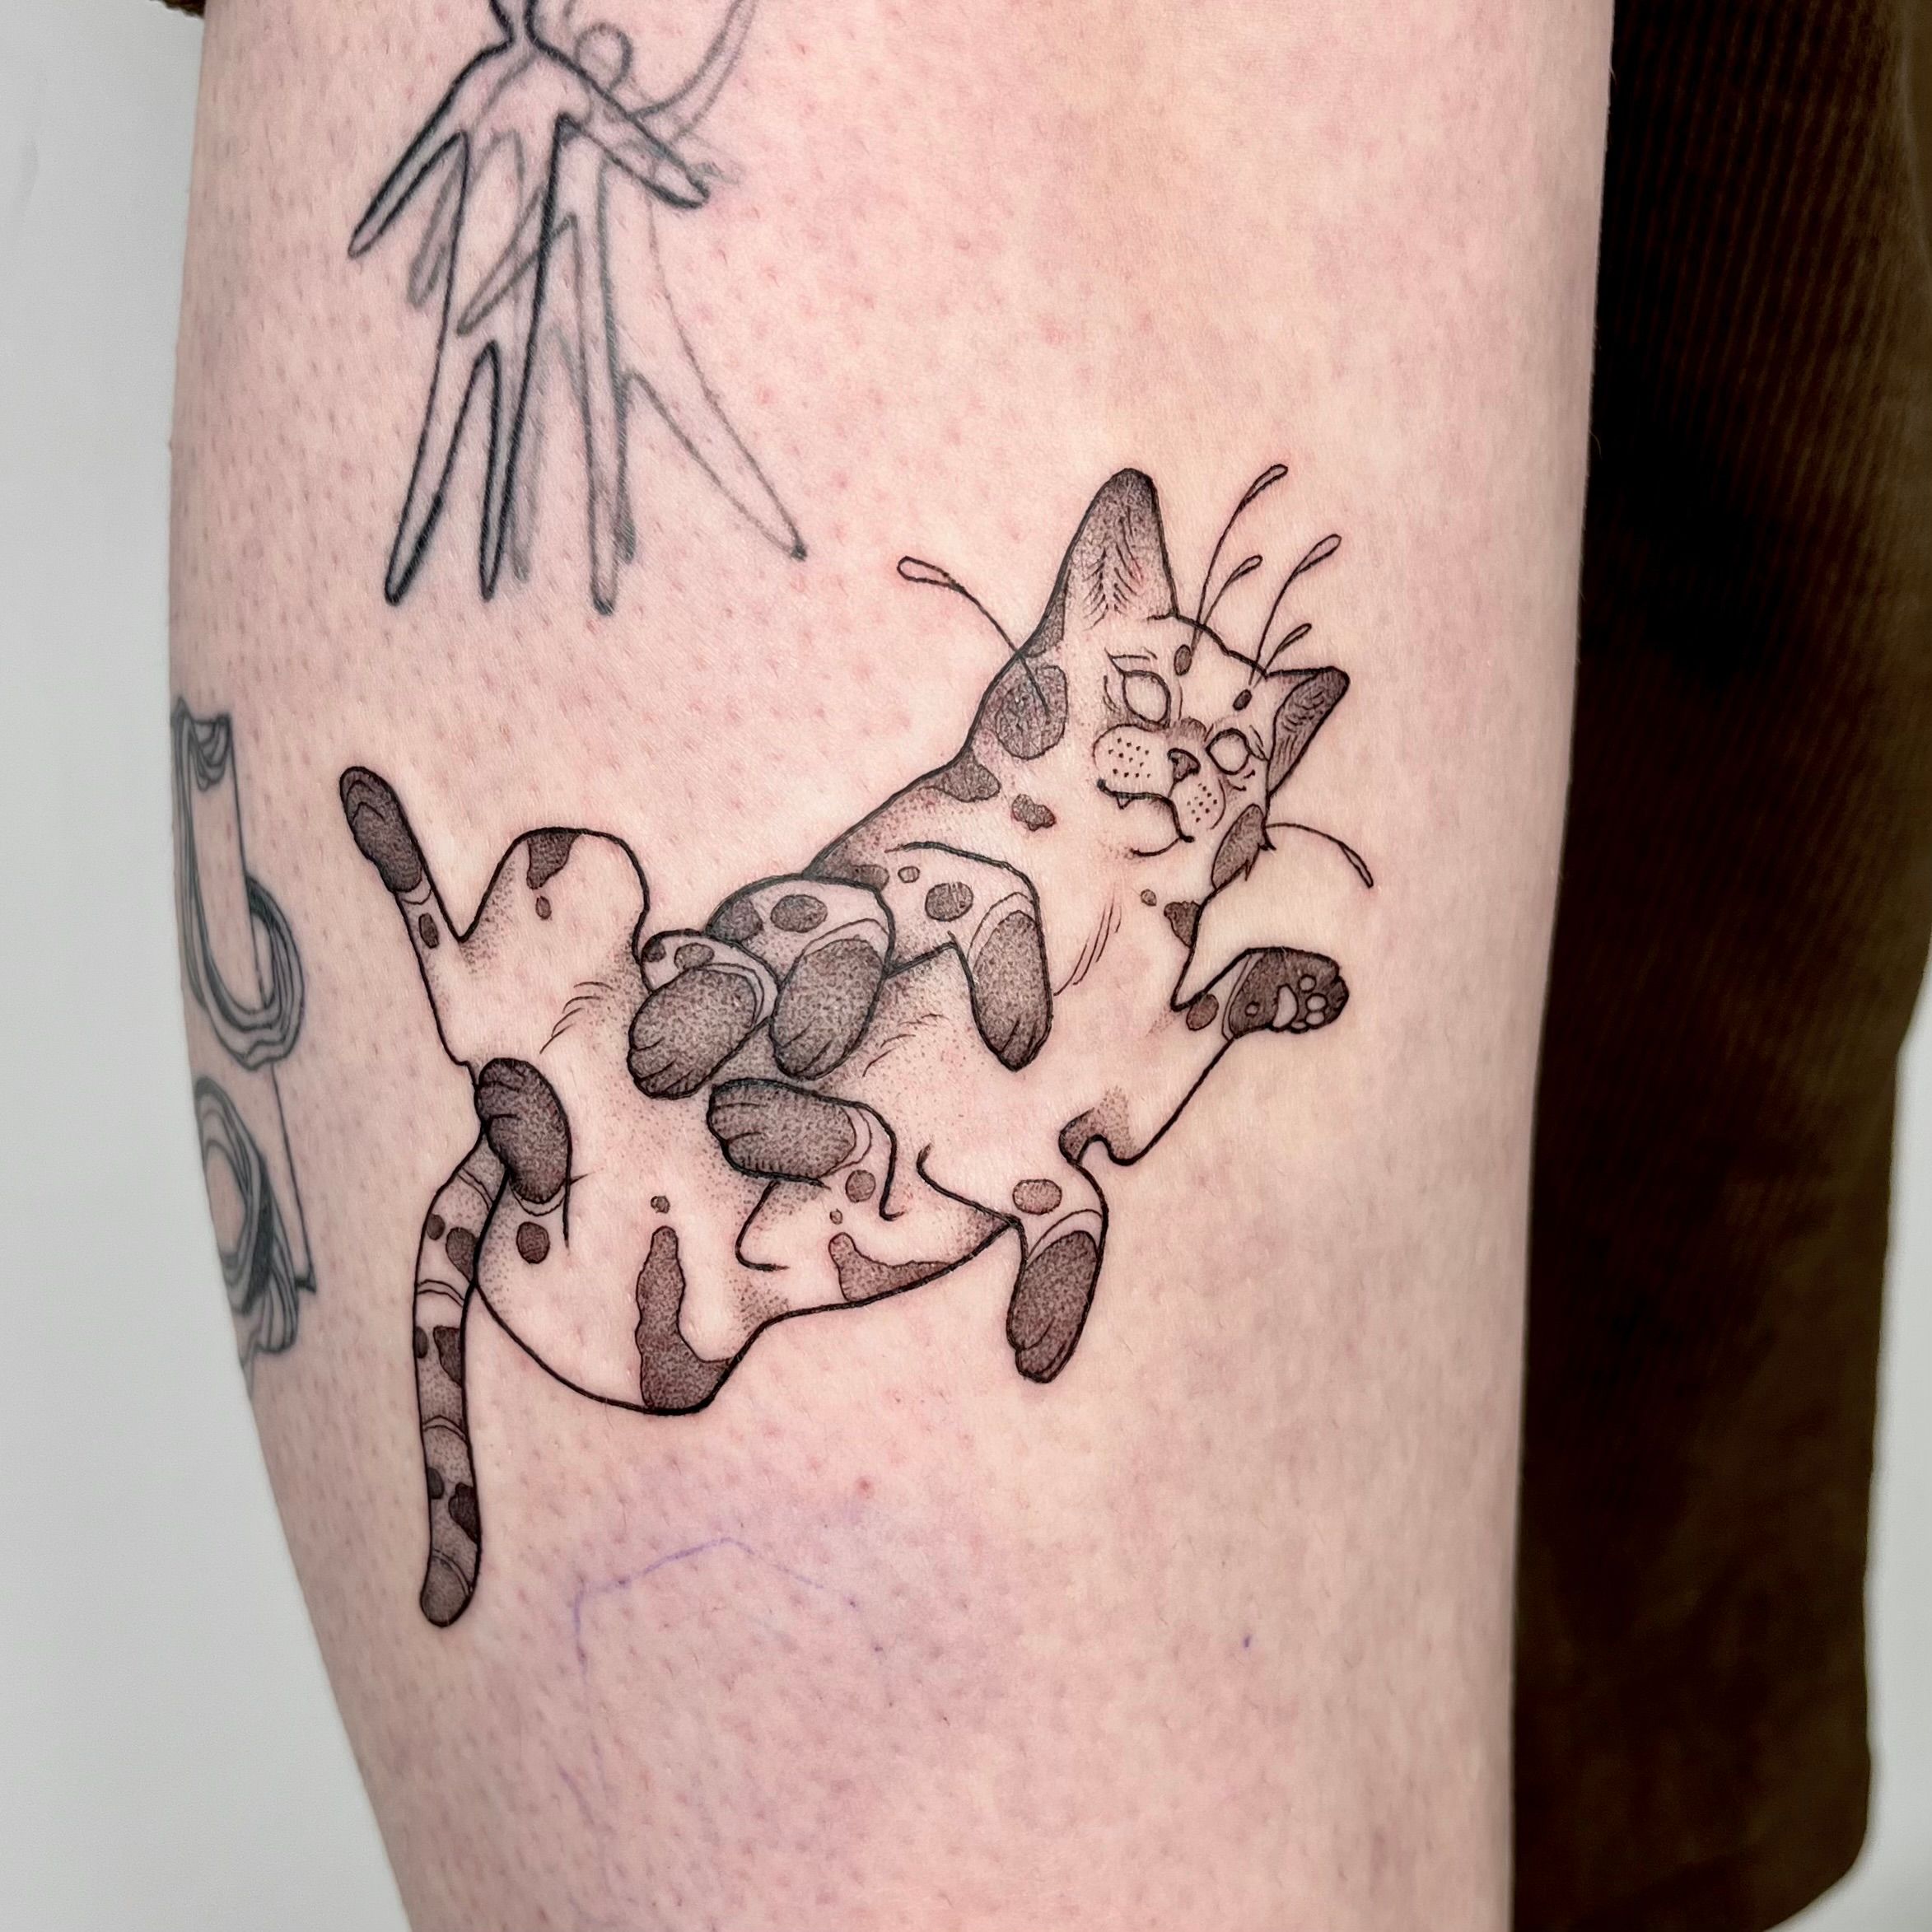 Pin by bizanelli on Tatuagens | Tattoos, Food tattoos, Small tattoos